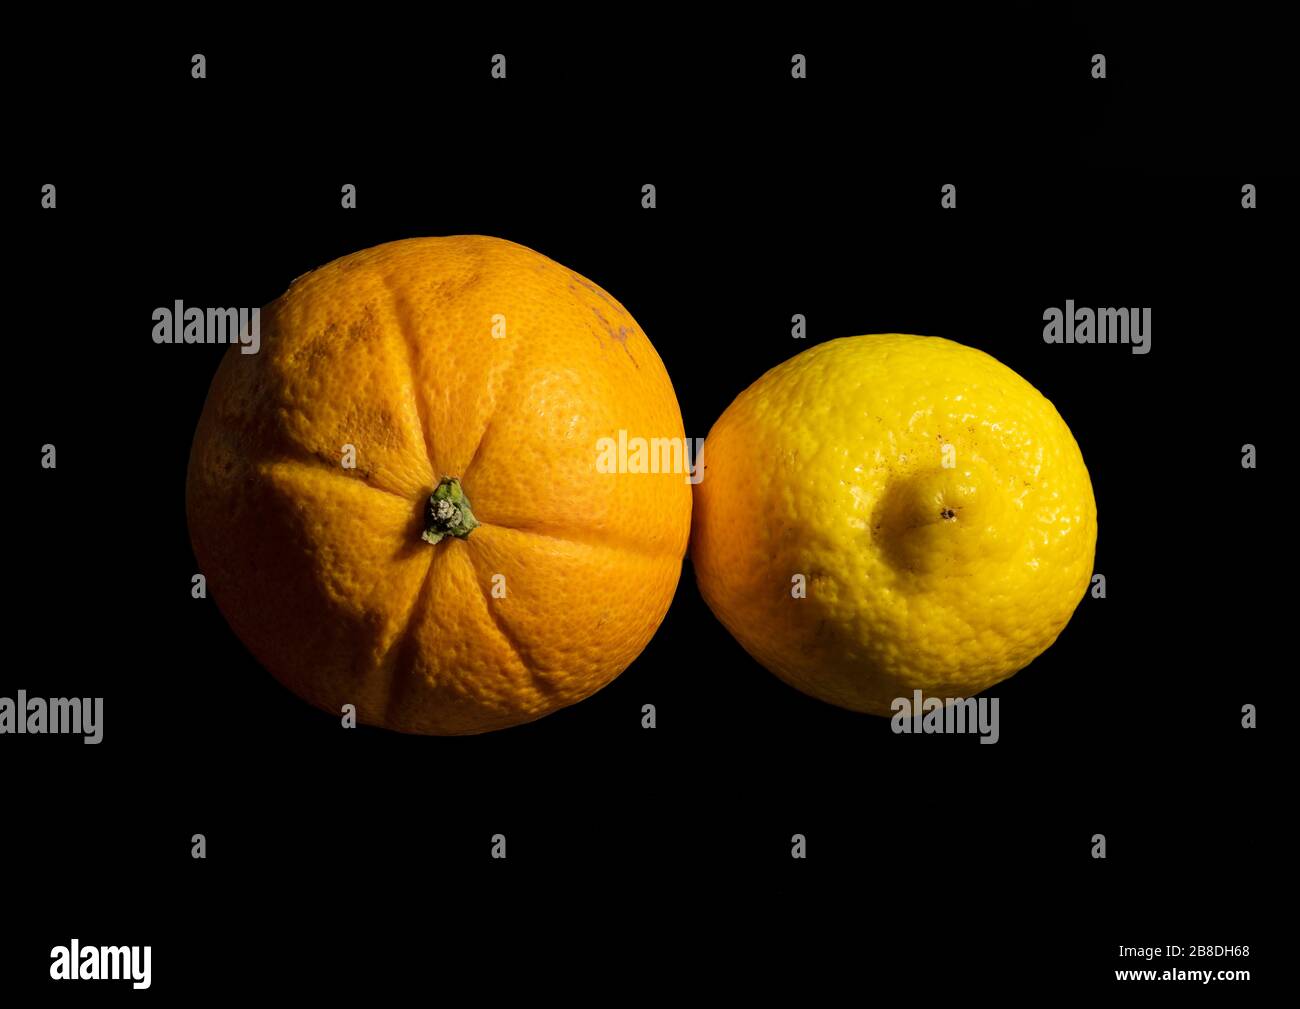 Immagine ravvicinata di un arancio e di un limone utilizzando una tecnica di sovrapposizione della messa a fuoco che rende i soggetti a fuoco nitido dalla parte anteriore a quella posteriore Foto Stock